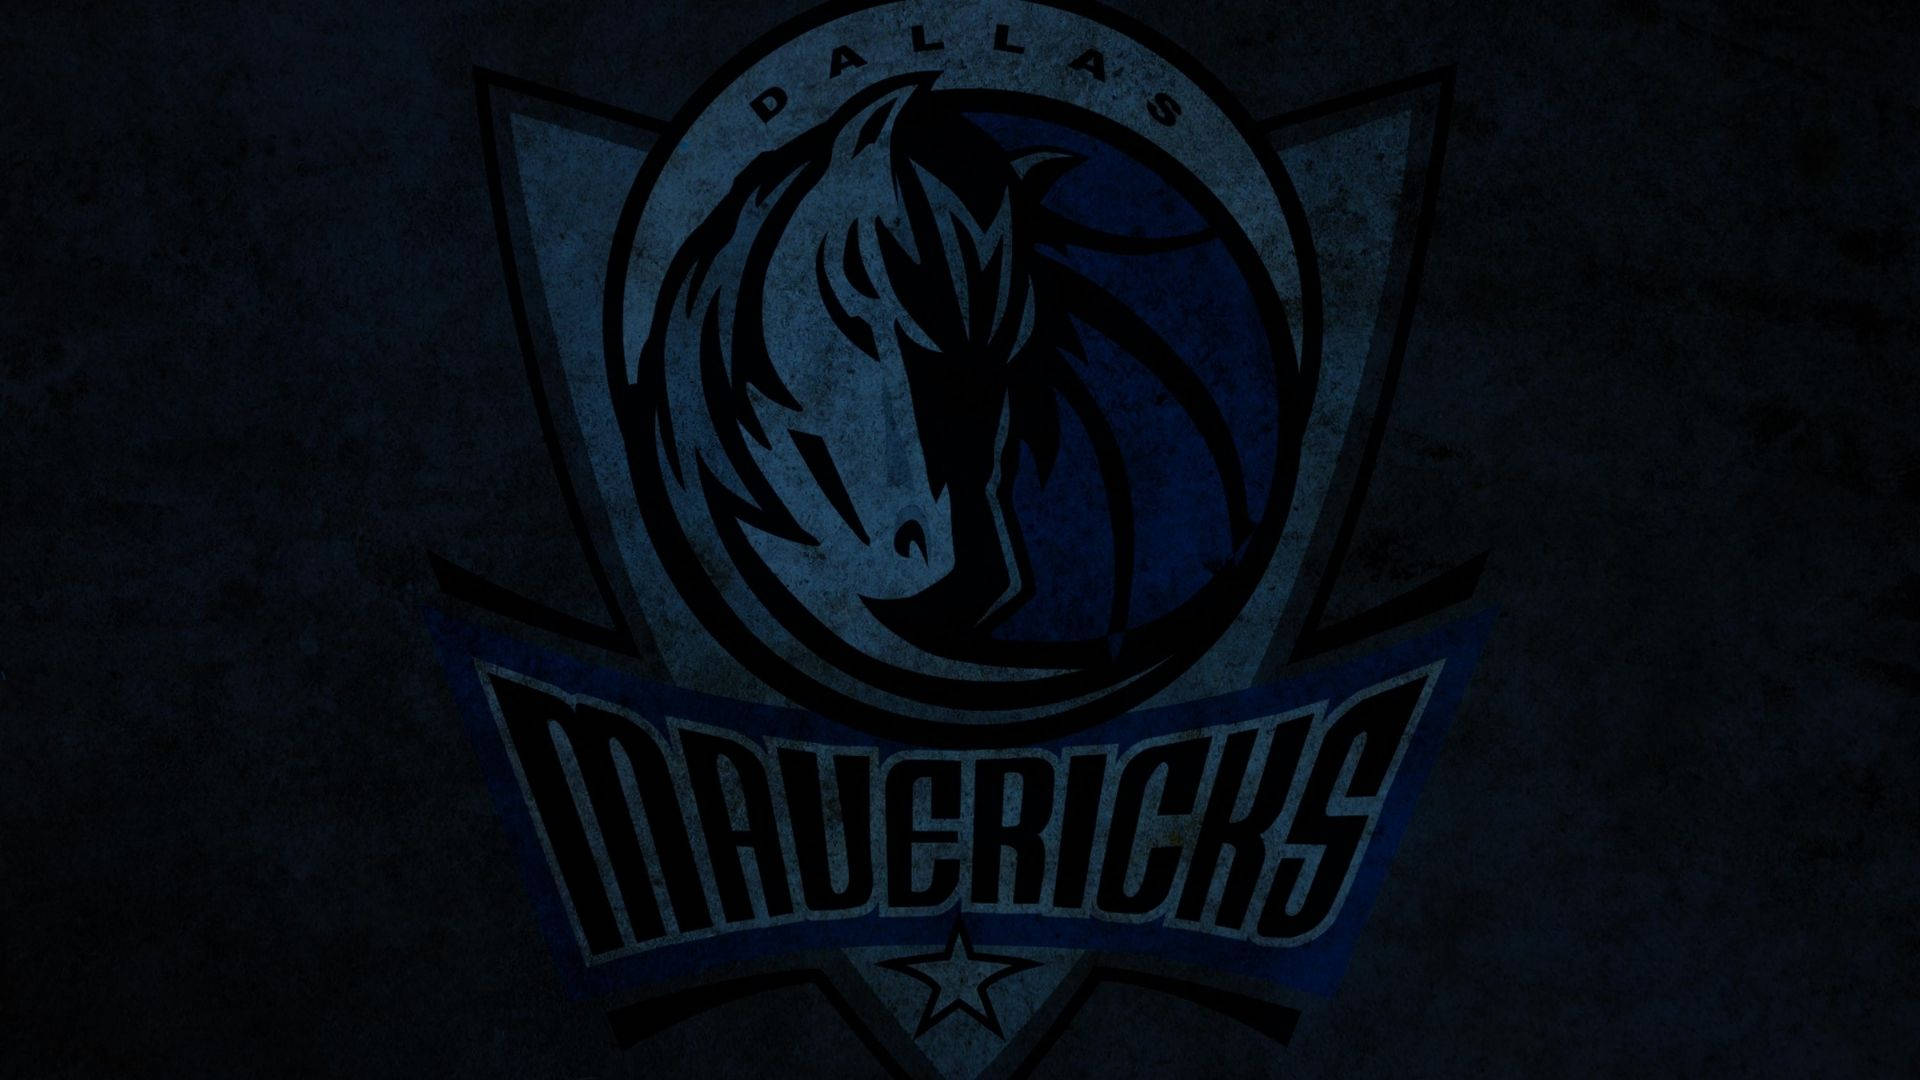 Dallas Mavericks In The Dark